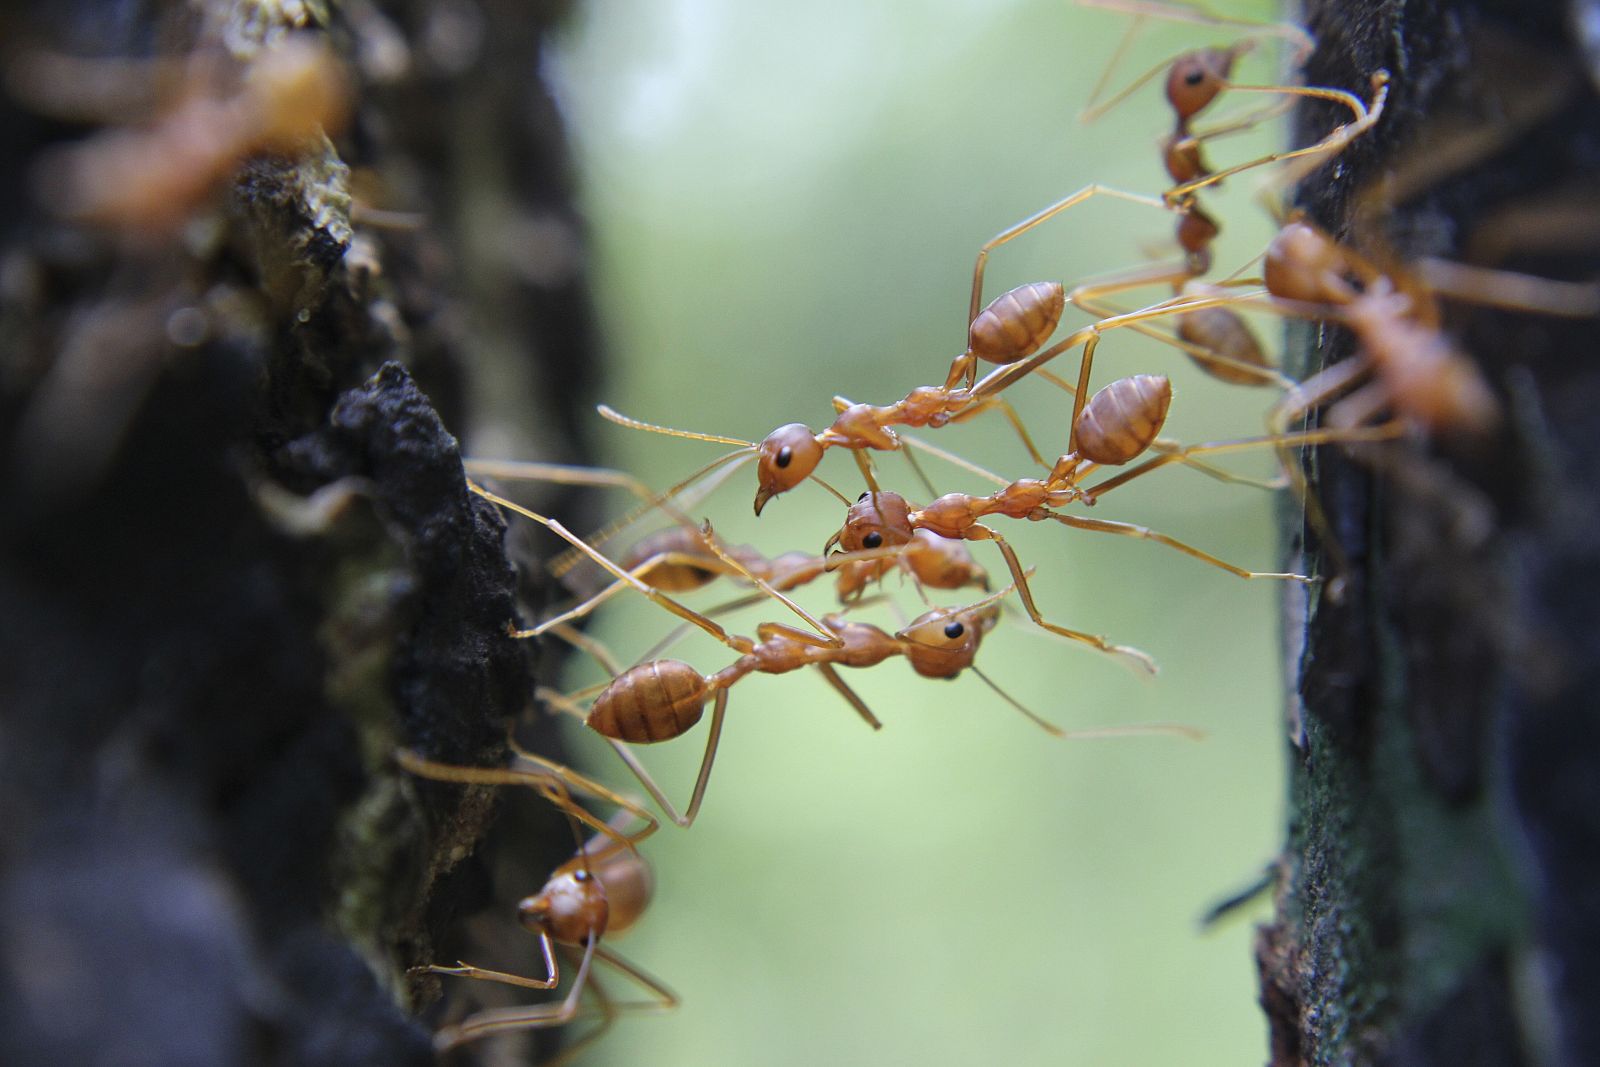 Una hormiga individual busca alimento de forma caótica, mientras que la búsqueda colectiva de comida se hace de forma ordenada